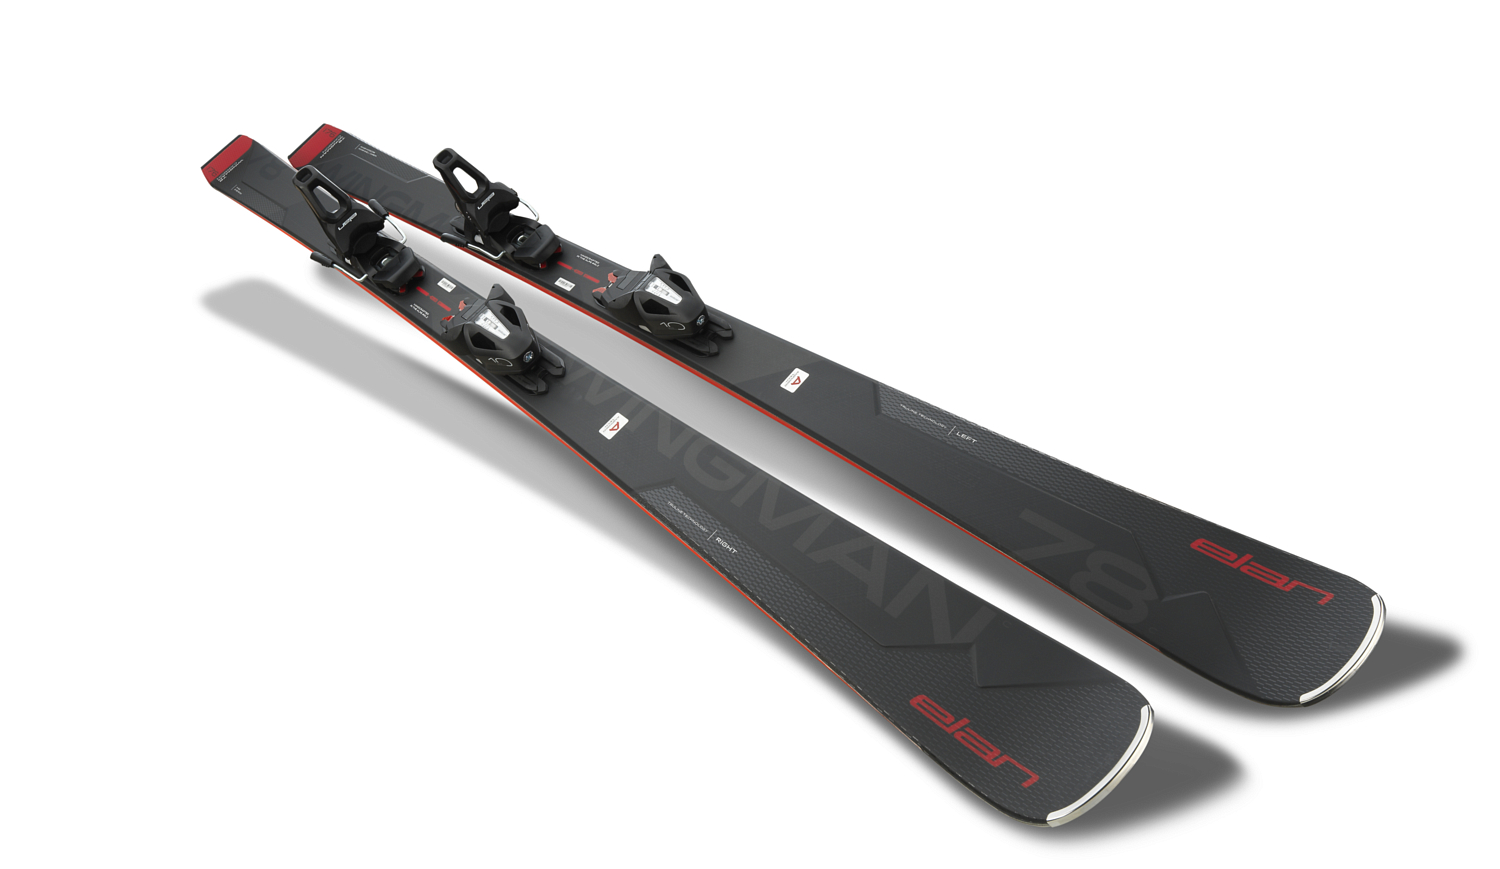 Горные лыжи с креплениями ELAN 2020-21 Wingman 78C PowerShift + EL 10 Shift Black/Red